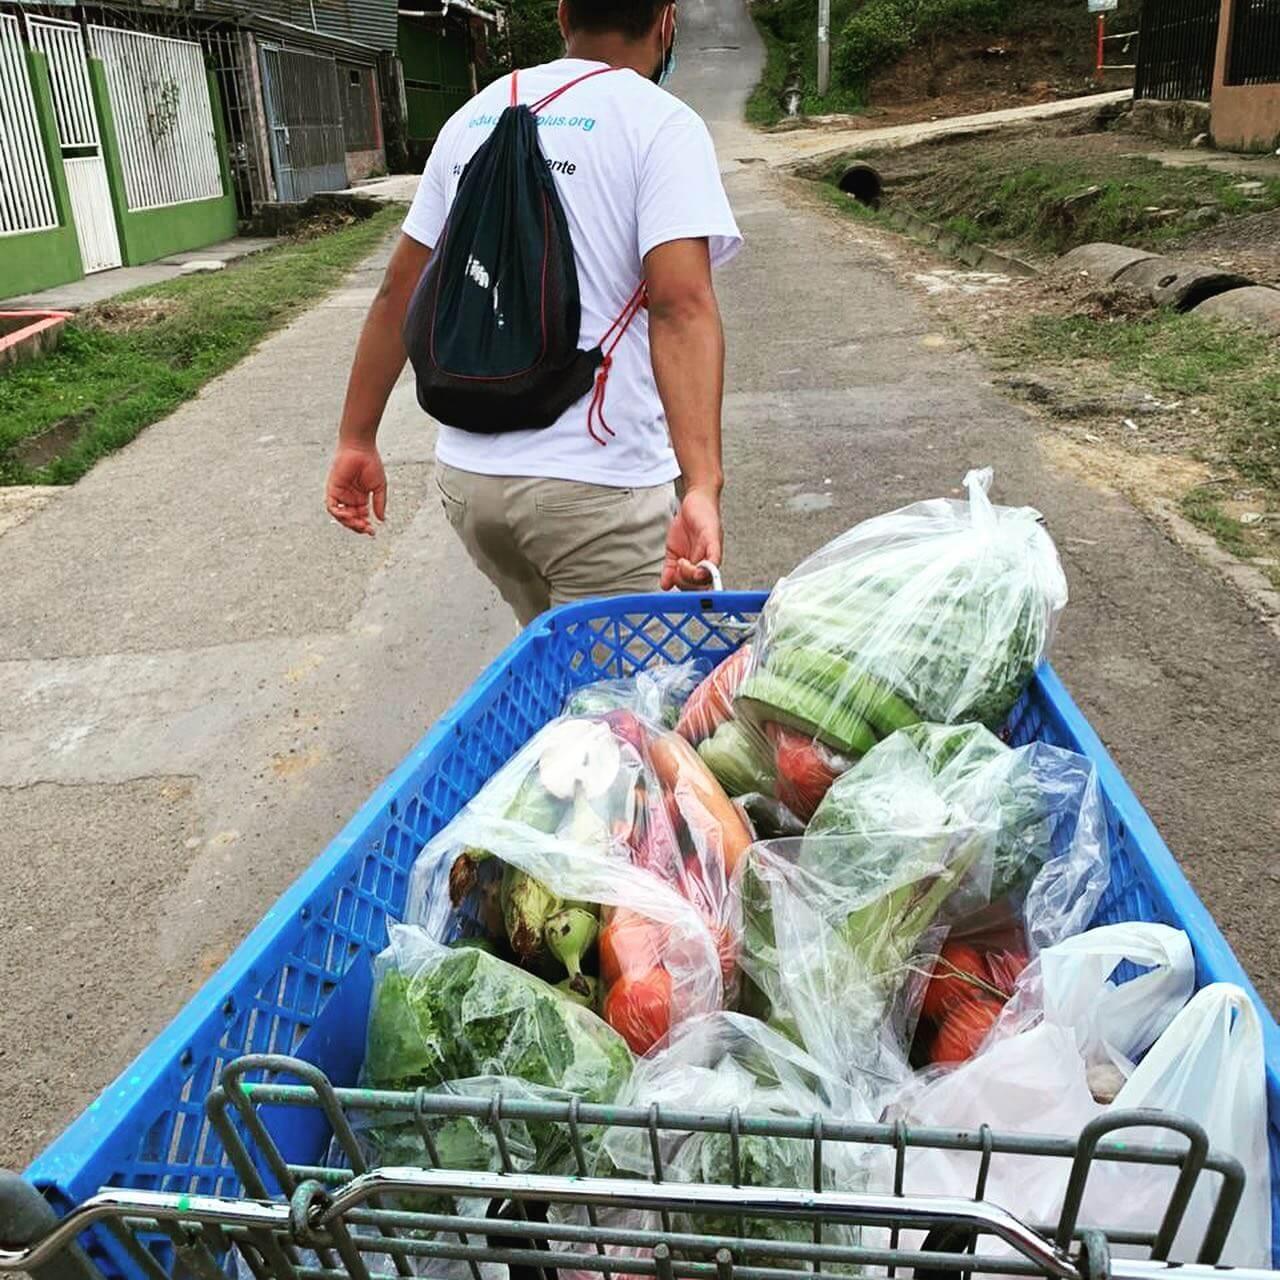 Persona llevando alimentos cargados en un carro de supermercado.